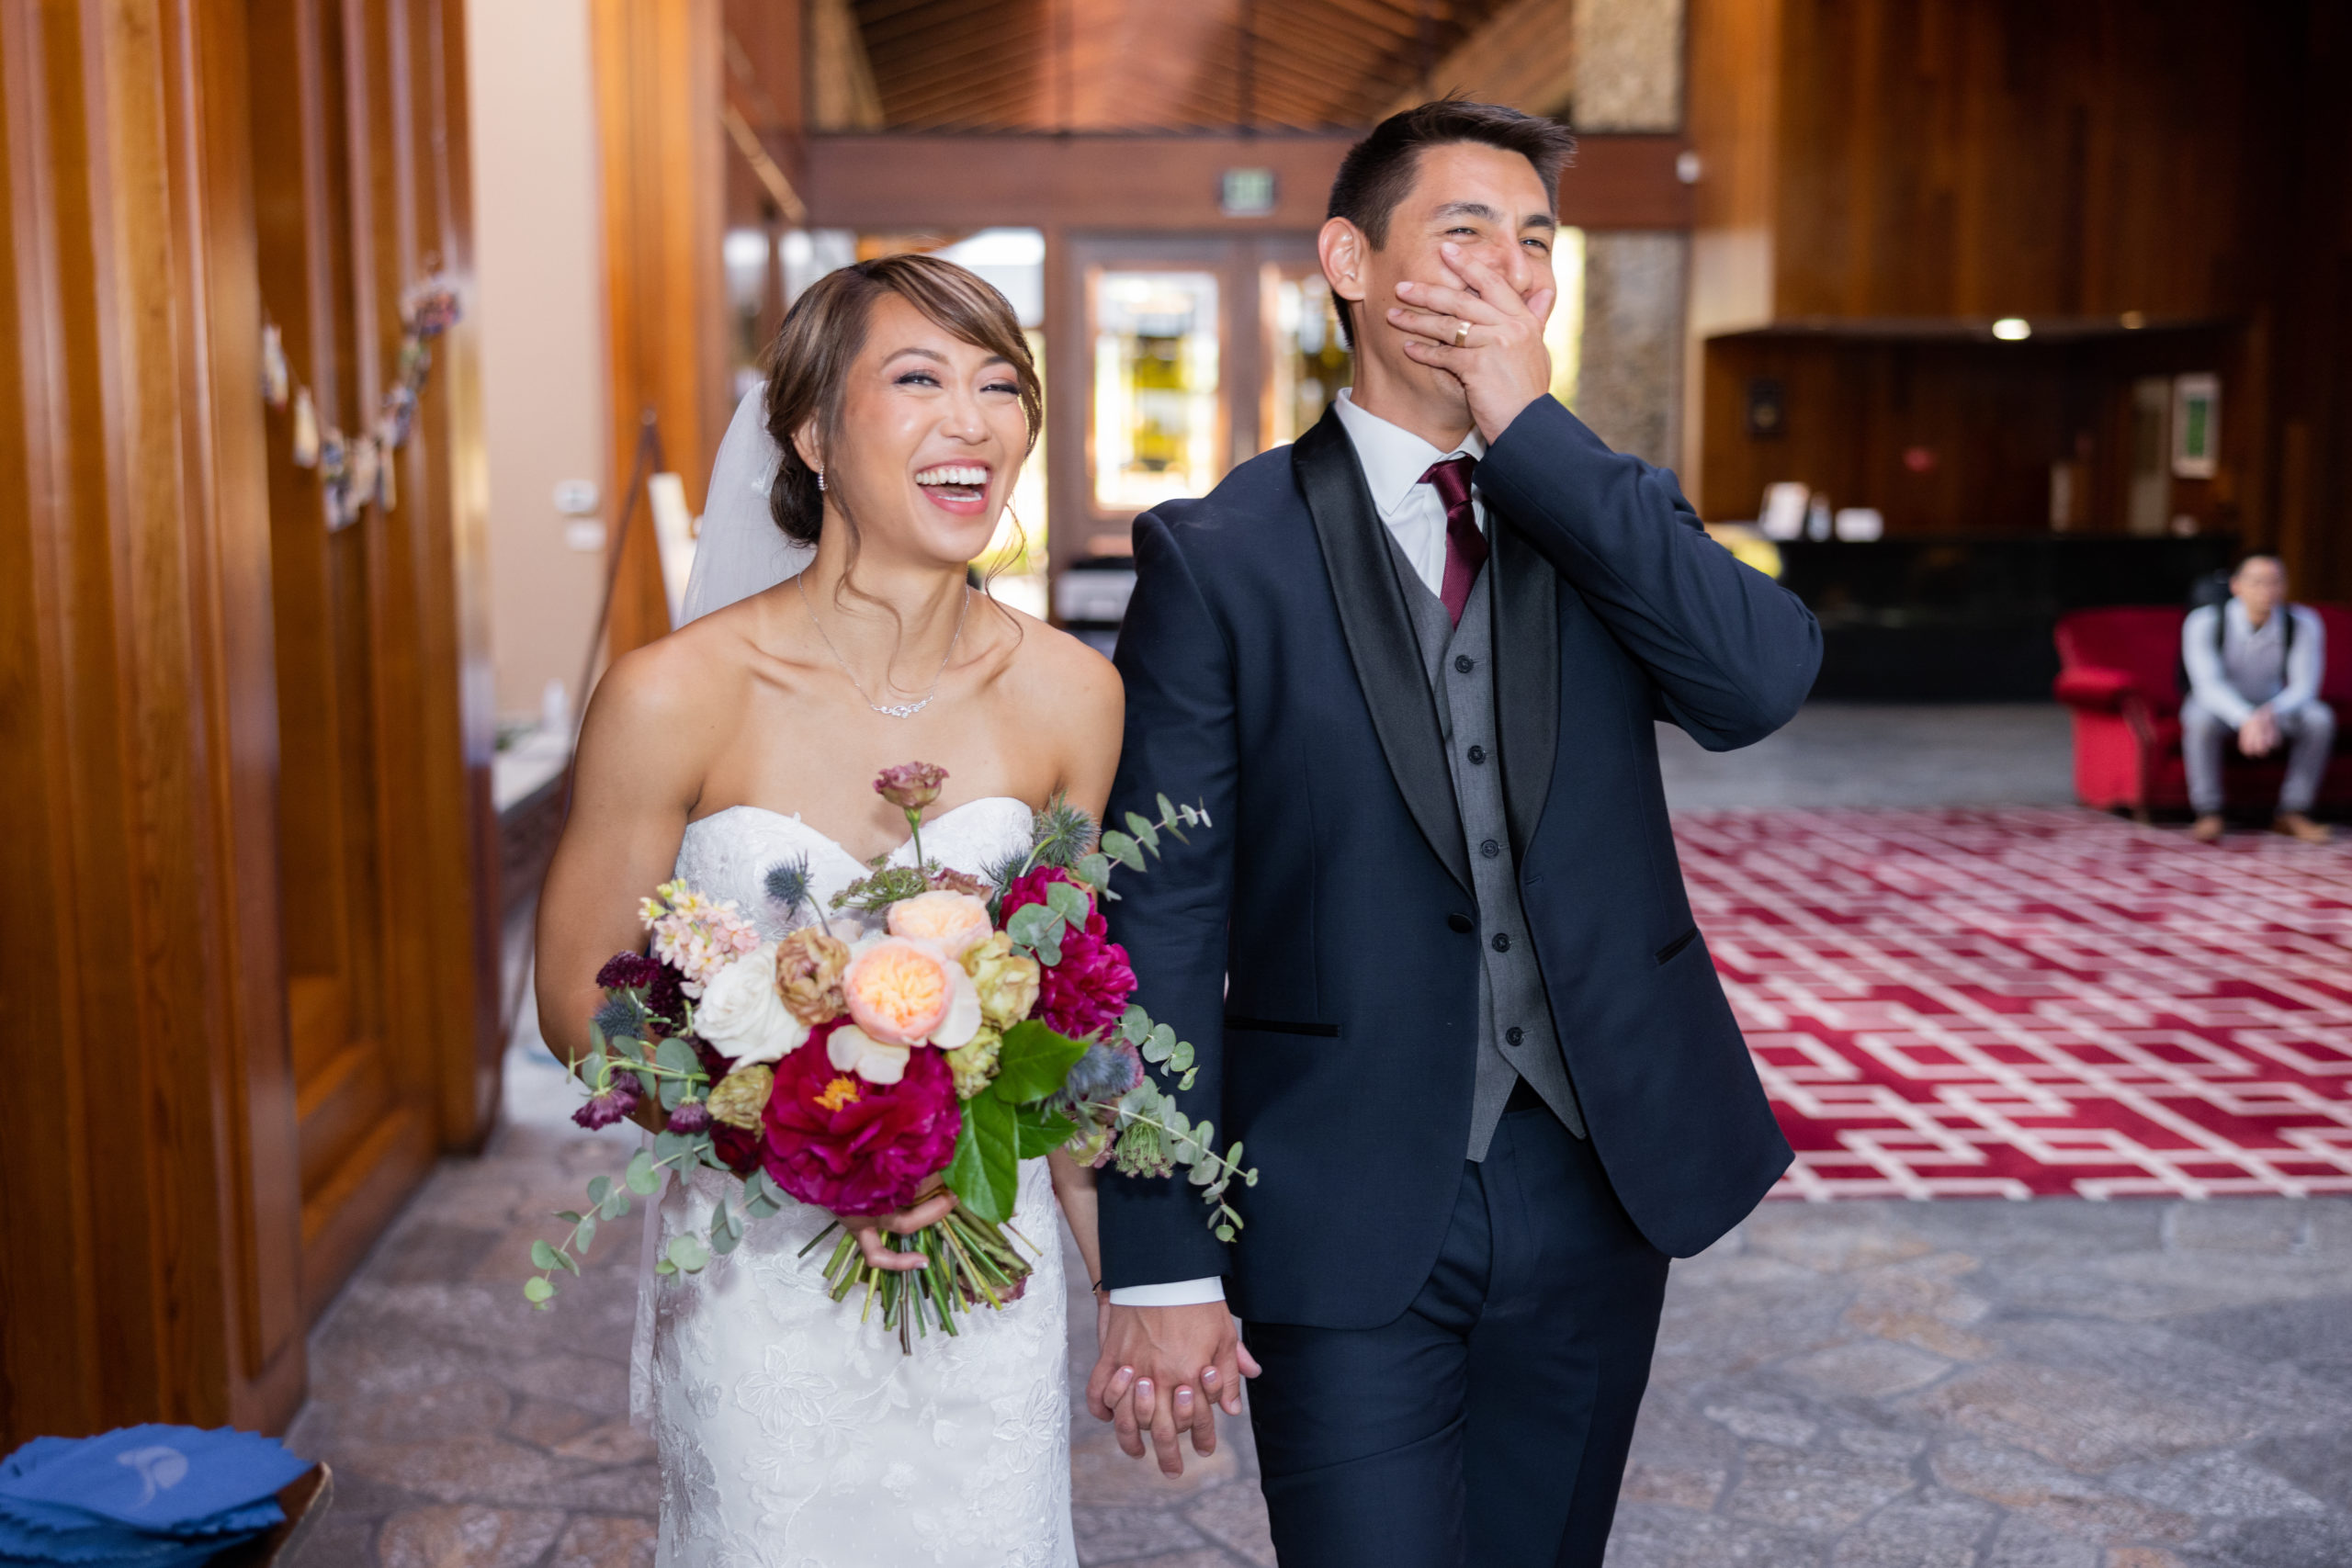 bride and groom walk into wedding reception surprised